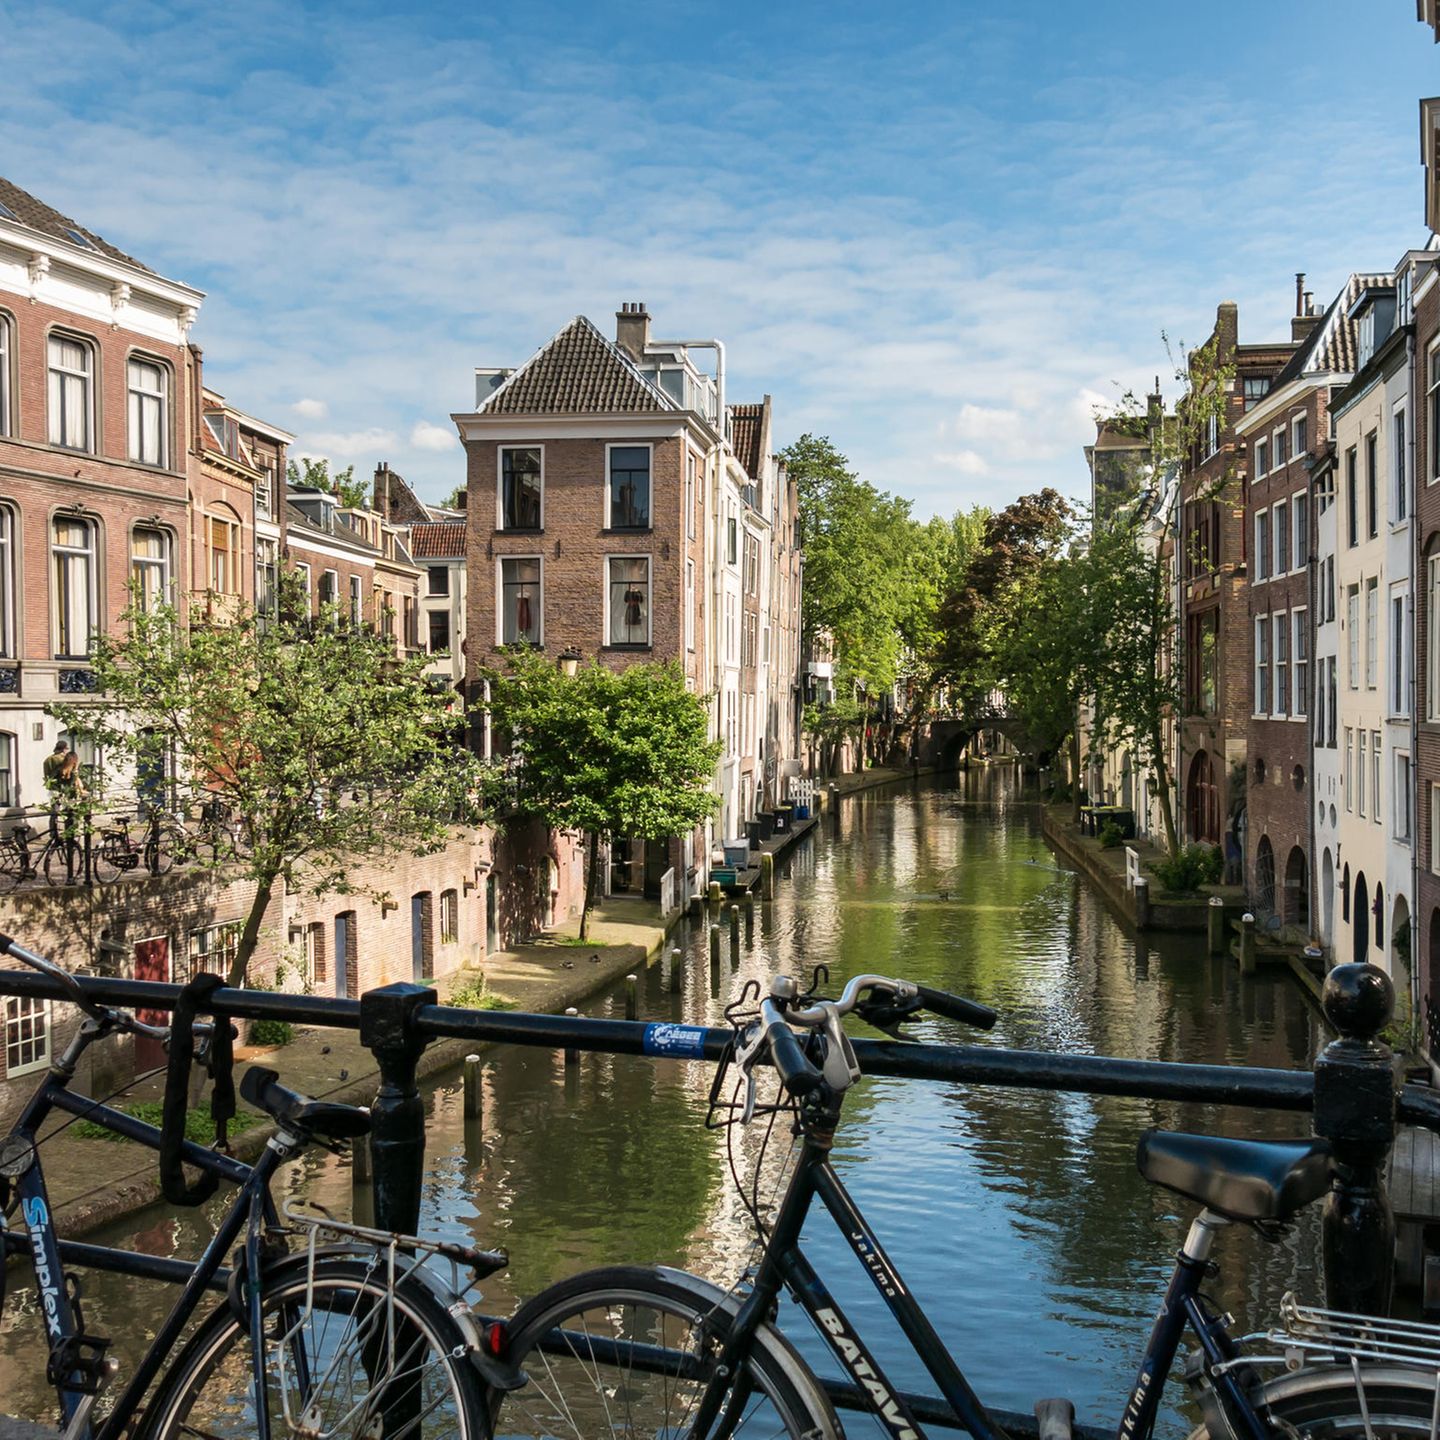 Utrecht ist mindestens genauso schön wie Amsterdam, aber nicht so überlaufen. Es bietet alles, was das Herz begehrt: tolle Museen, unzählige Grachten, süße Brücken, kreative Shops und viele Fahrräder, die man mieten kann. Und wer auf Coffee Shops und Rotlicht nicht verzichten kann, der findet in Utrecht genauso Ersatz, nur etwas kleiner. Susanne